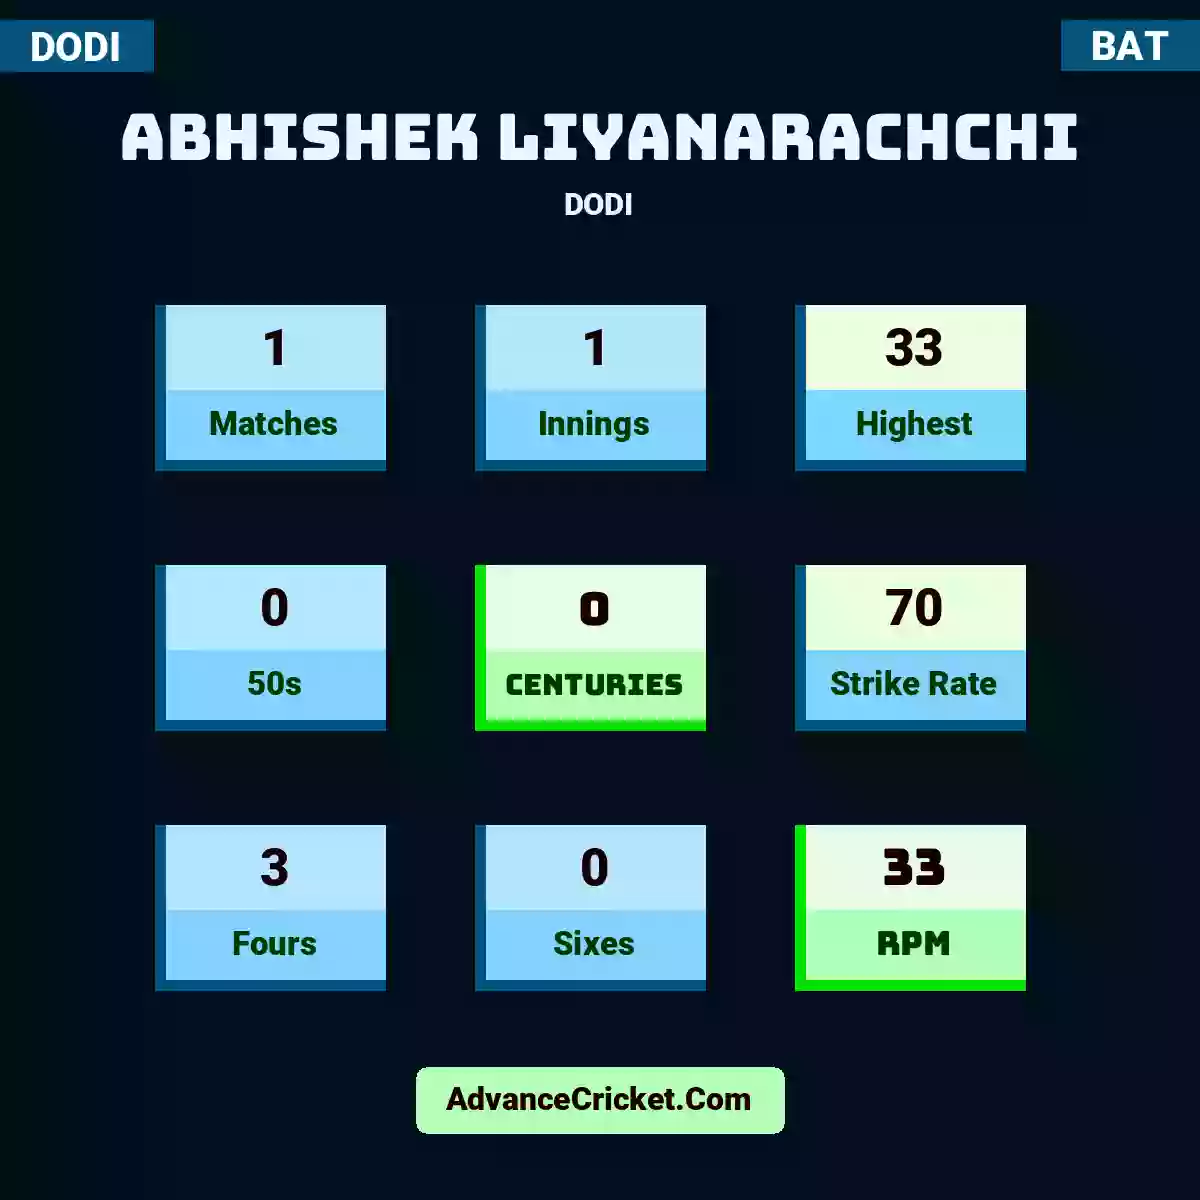 Abhishek Liyanarachchi DODI , Abhishek Liyanarachchi played 1 matches, scored 33 runs as highest, 0 half-centuries, and 0 centuries, with a strike rate of 70. A.Liyanarachchi hit 3 fours and 0 sixes, with an RPM of 33.